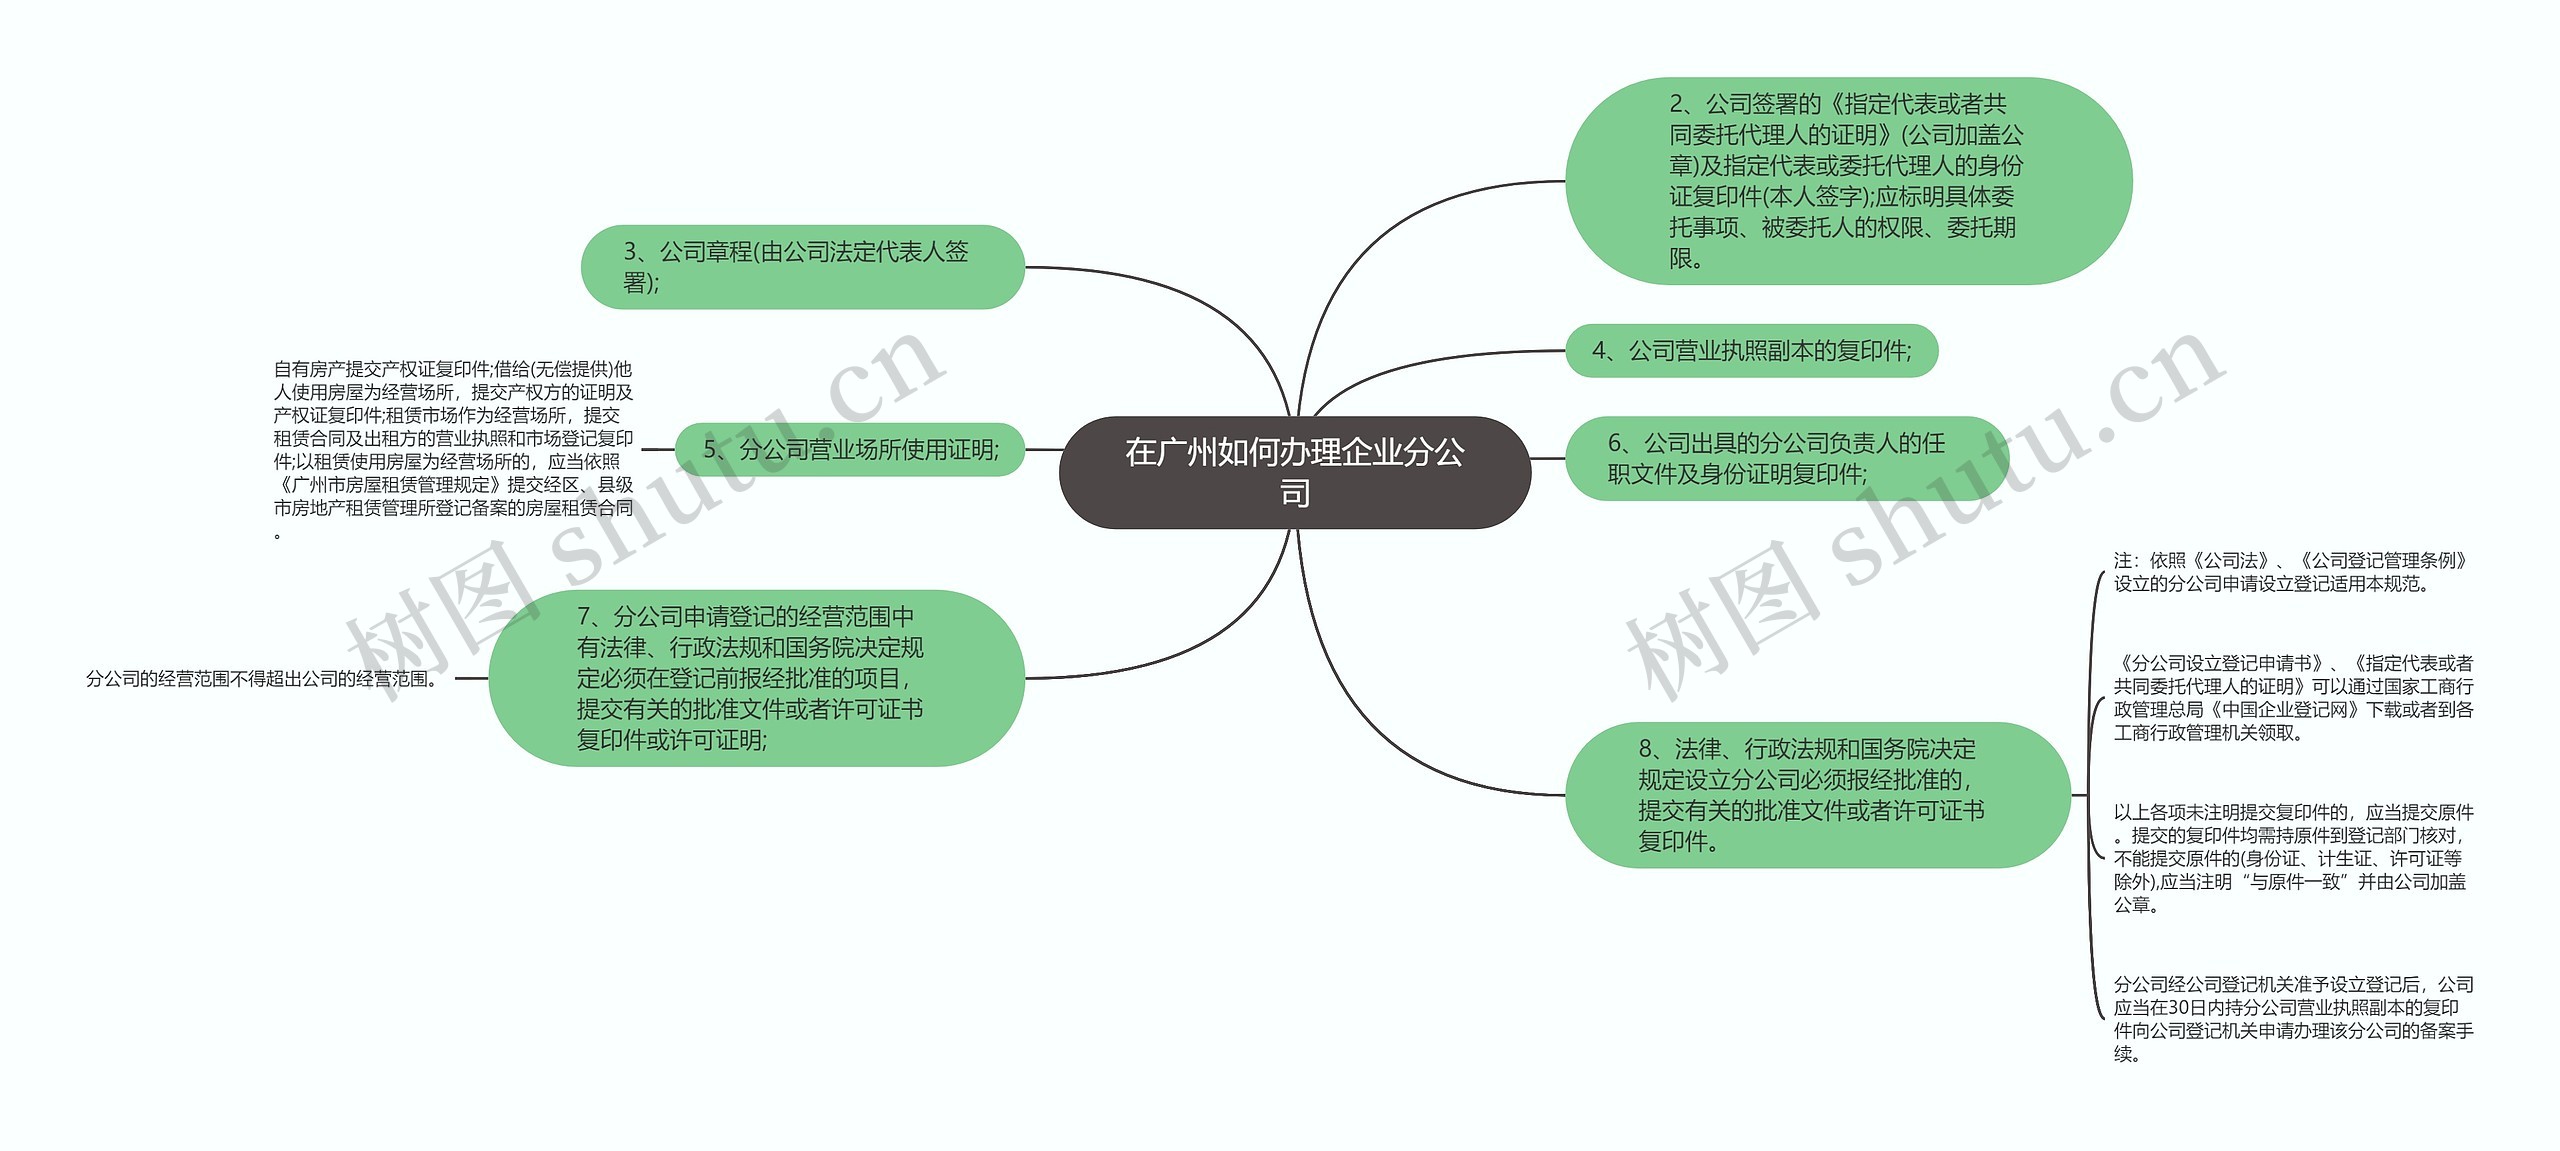 在广州如何办理企业分公司思维导图